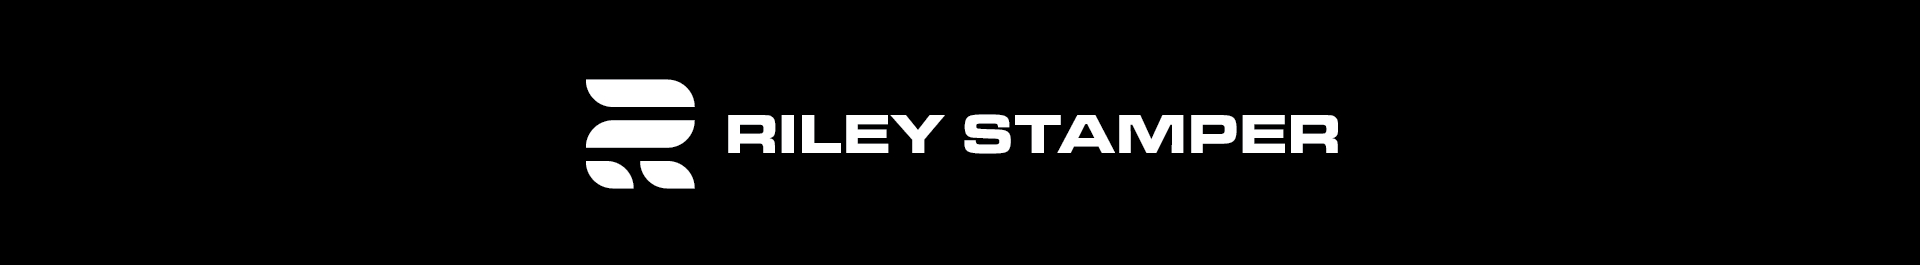 Riley Stamper's profile banner